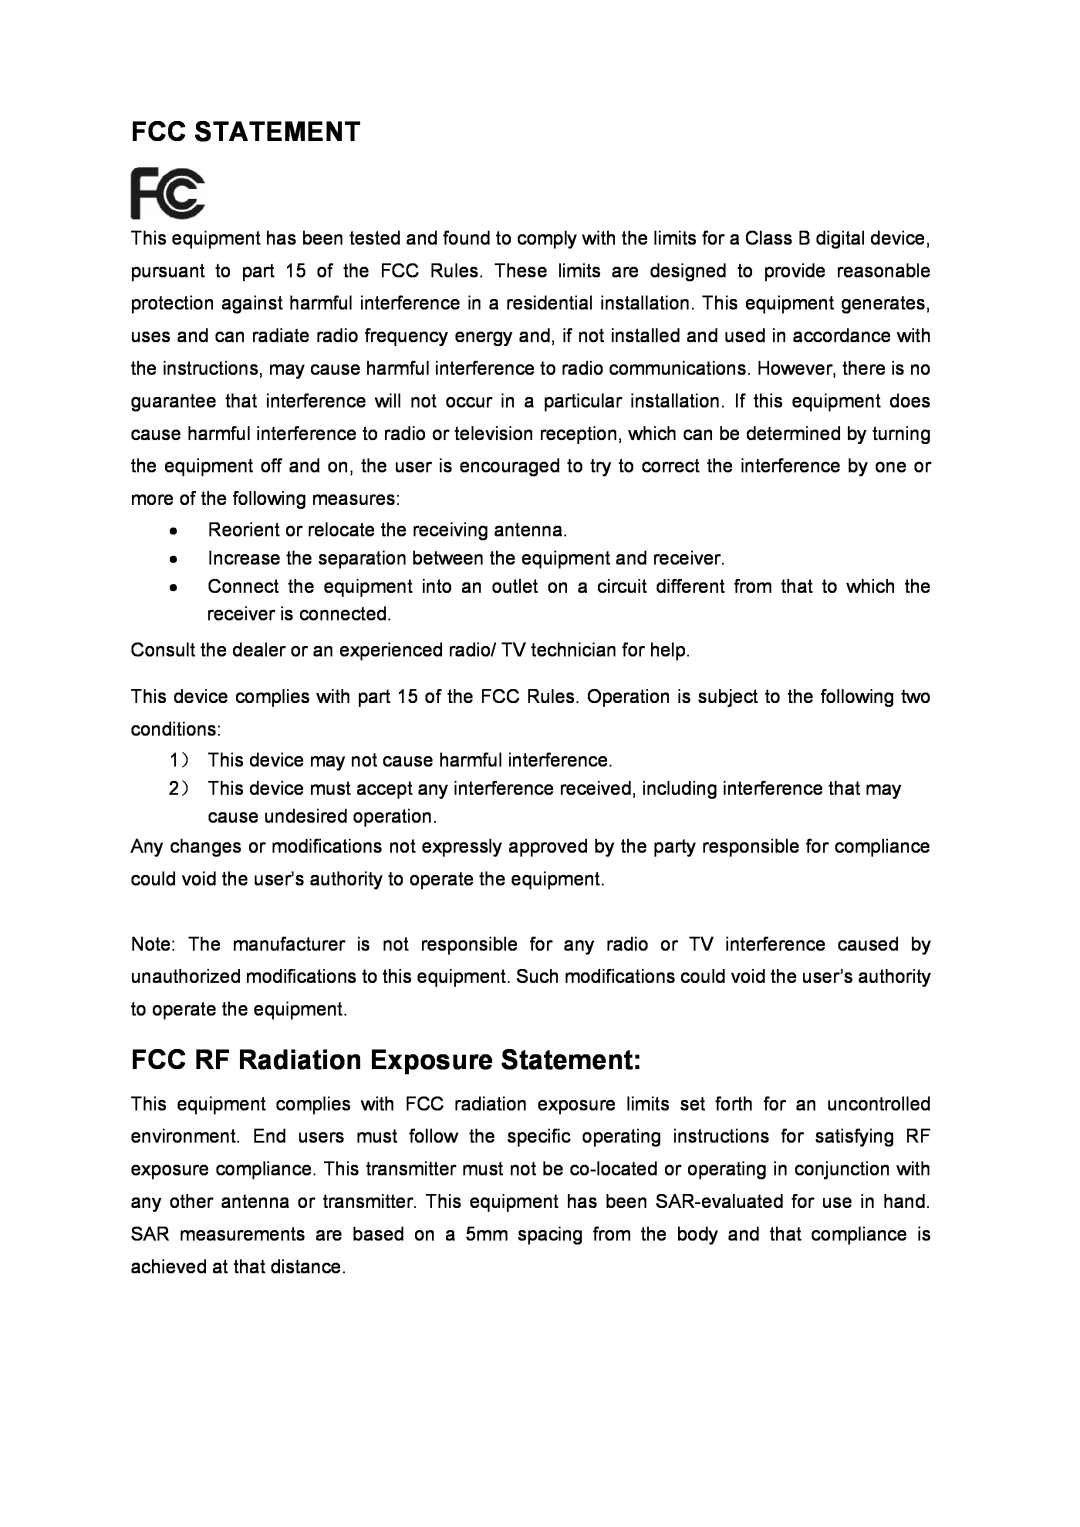 TP-Link TL-WN951N manual Fcc Statement, FCC RF Radiation Exposure Statement 